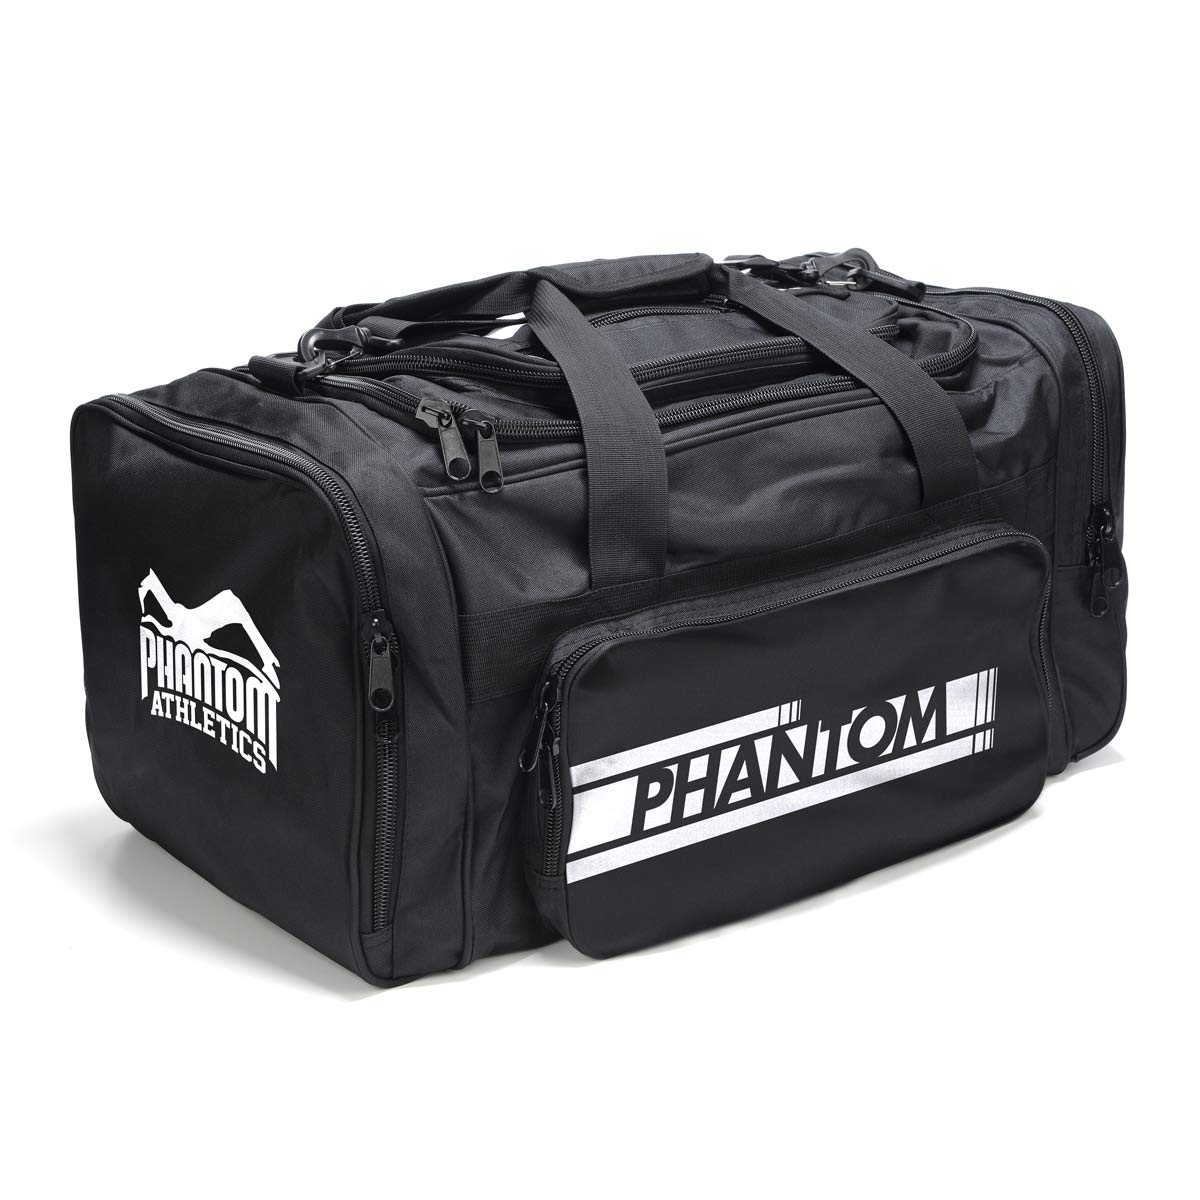 La borsa sportiva Phantom TEAM con molti scomparti per le arti marziali